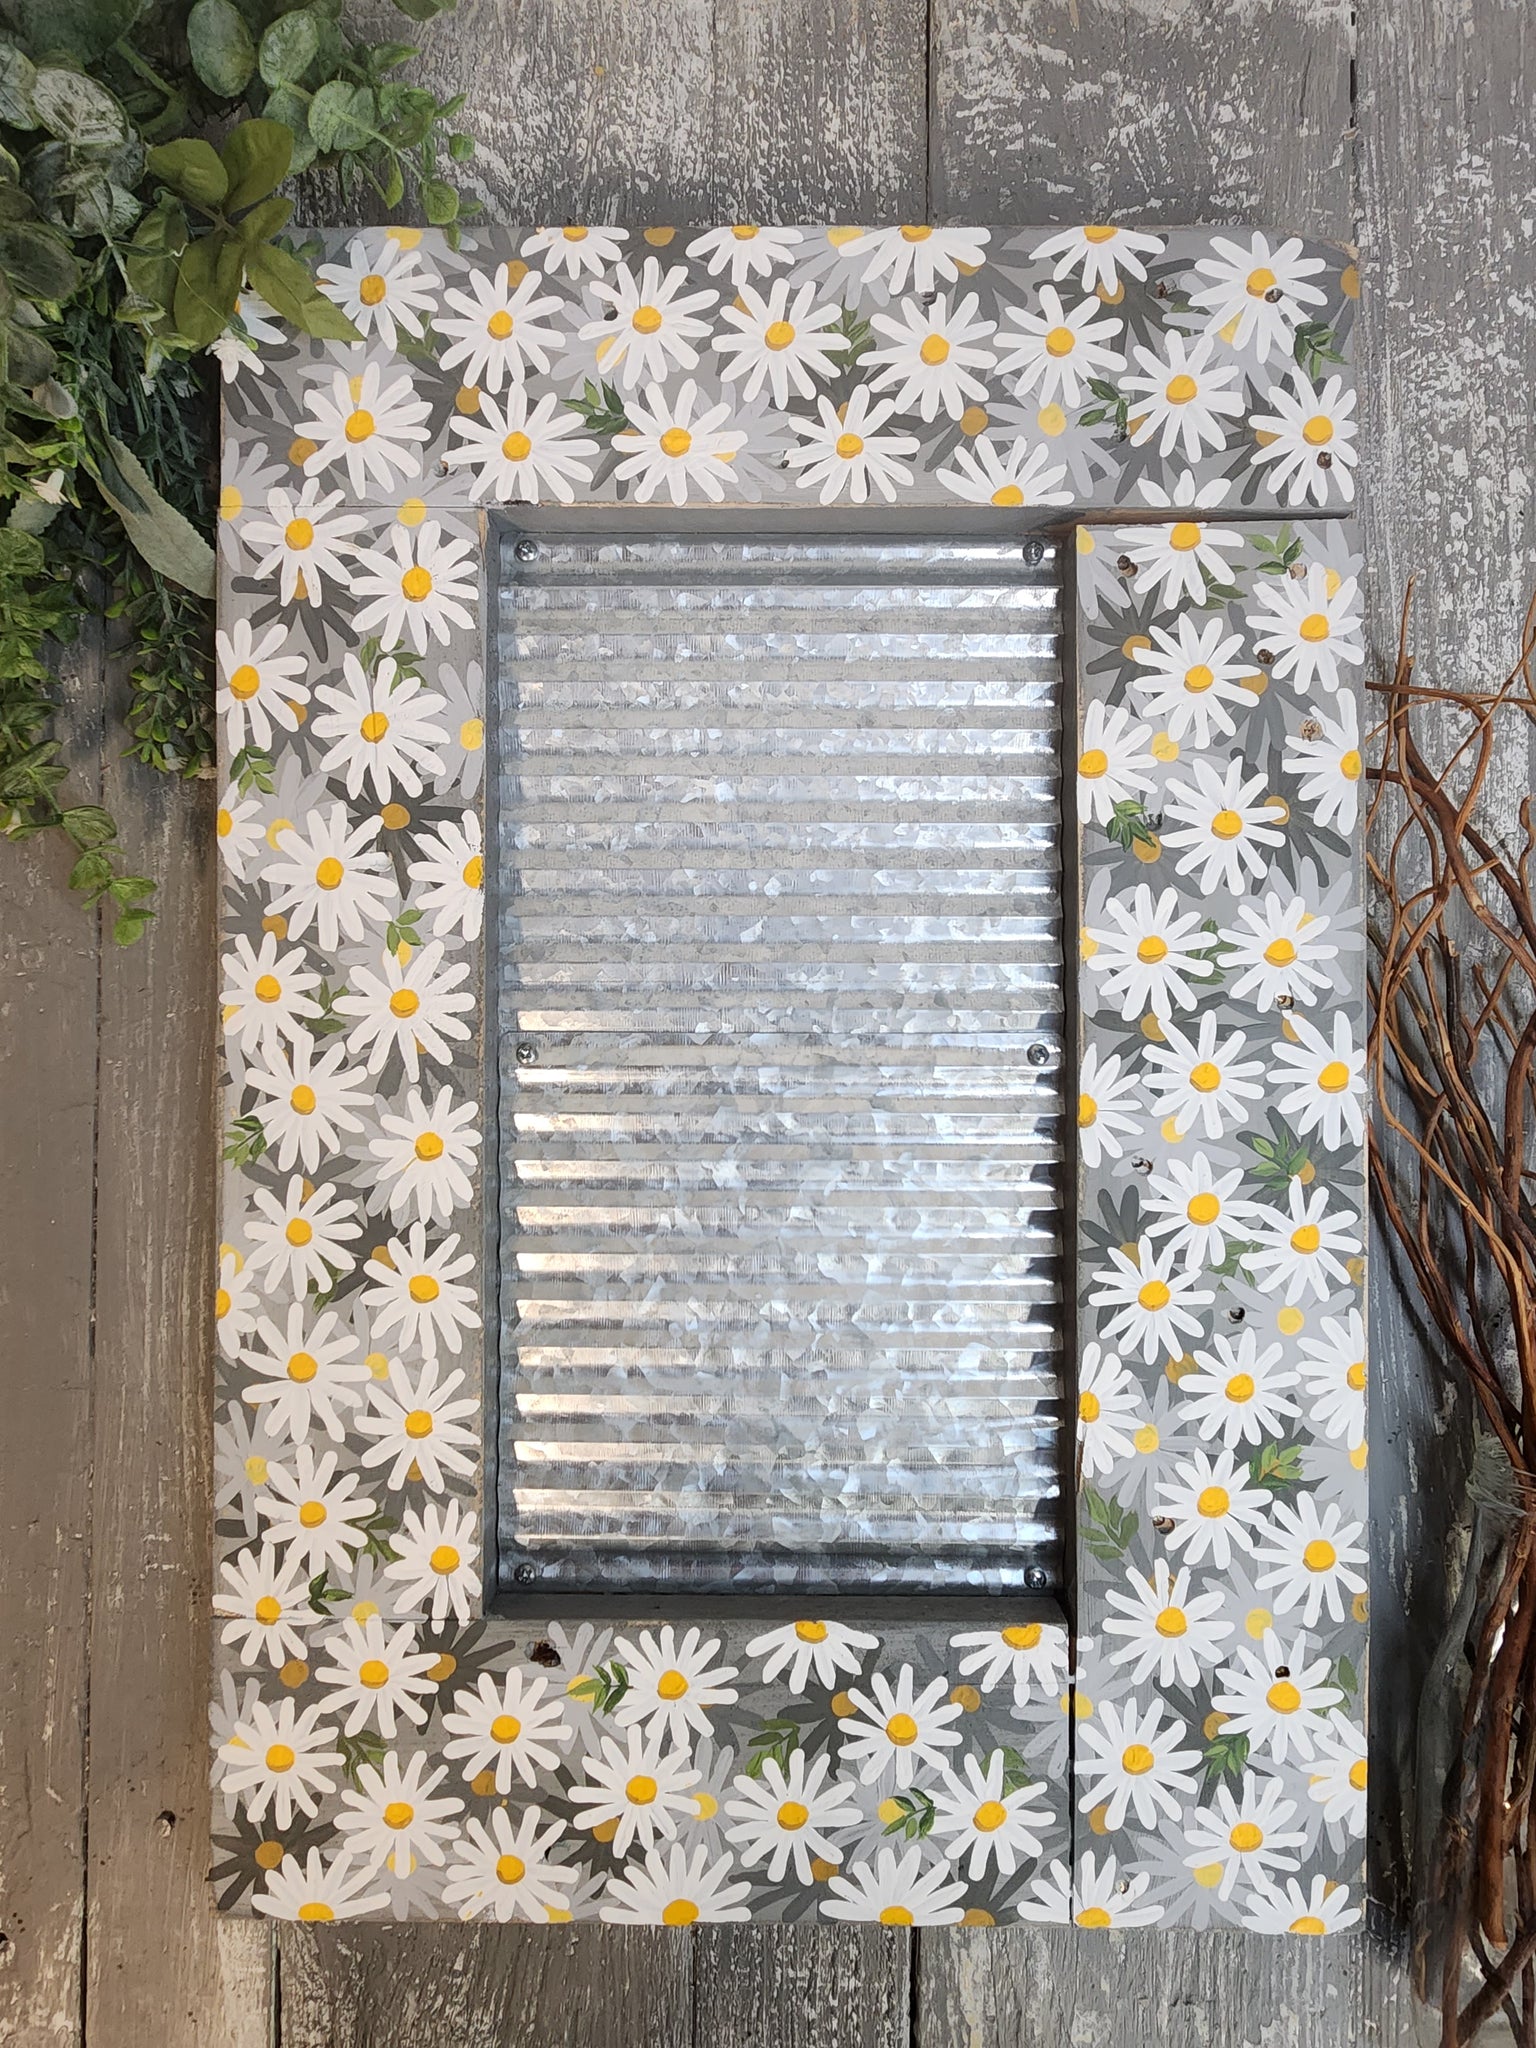 White Daisies 8x10 Art Print - Charming Floral Wall Decor » Pip & Cricket